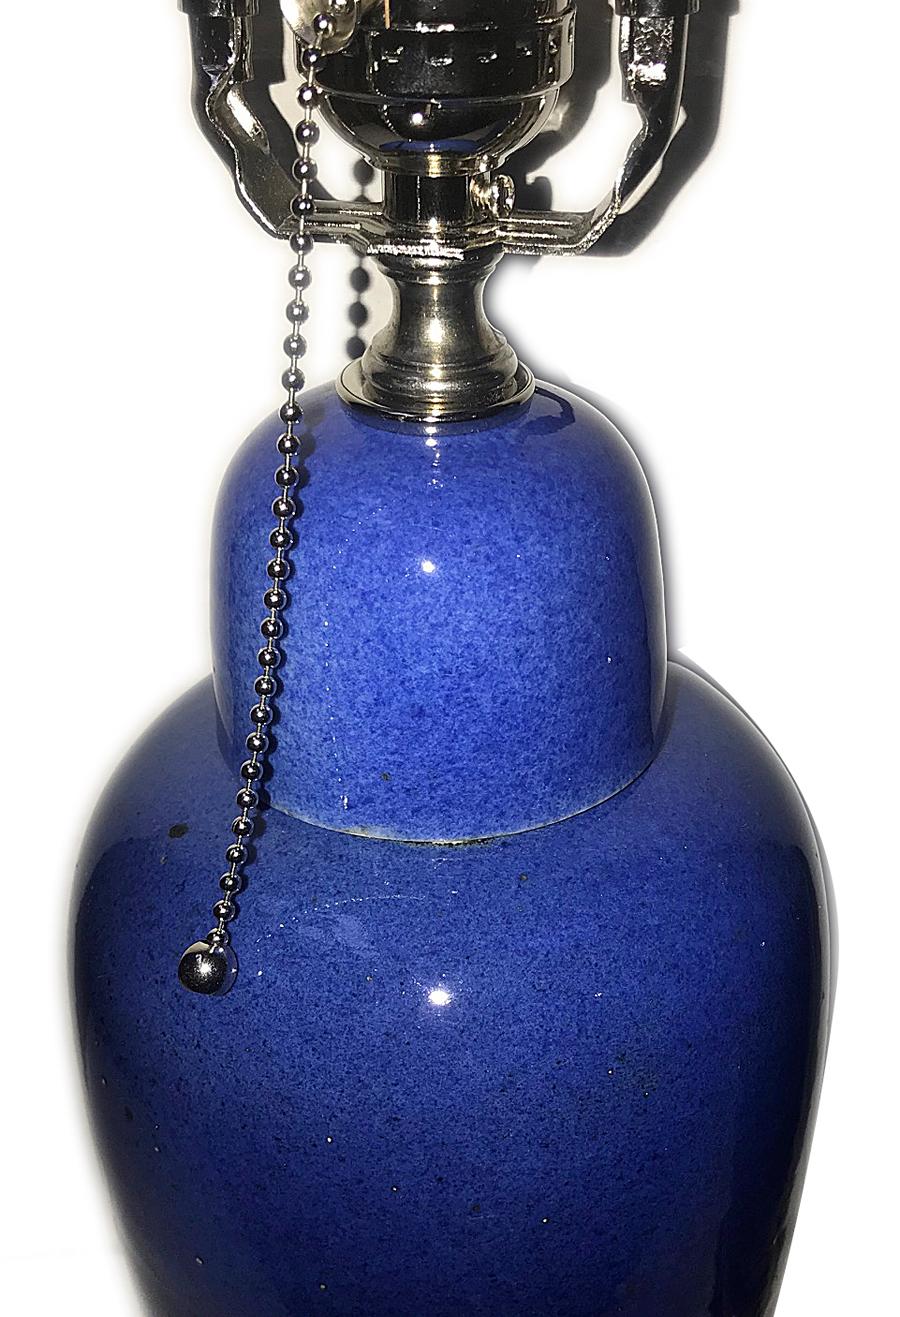 Une paire de lampes de table en porcelaine émaillée bleue française des années 1940 avec des bases en argent.

Mesures :
Hauteur du corps : 14